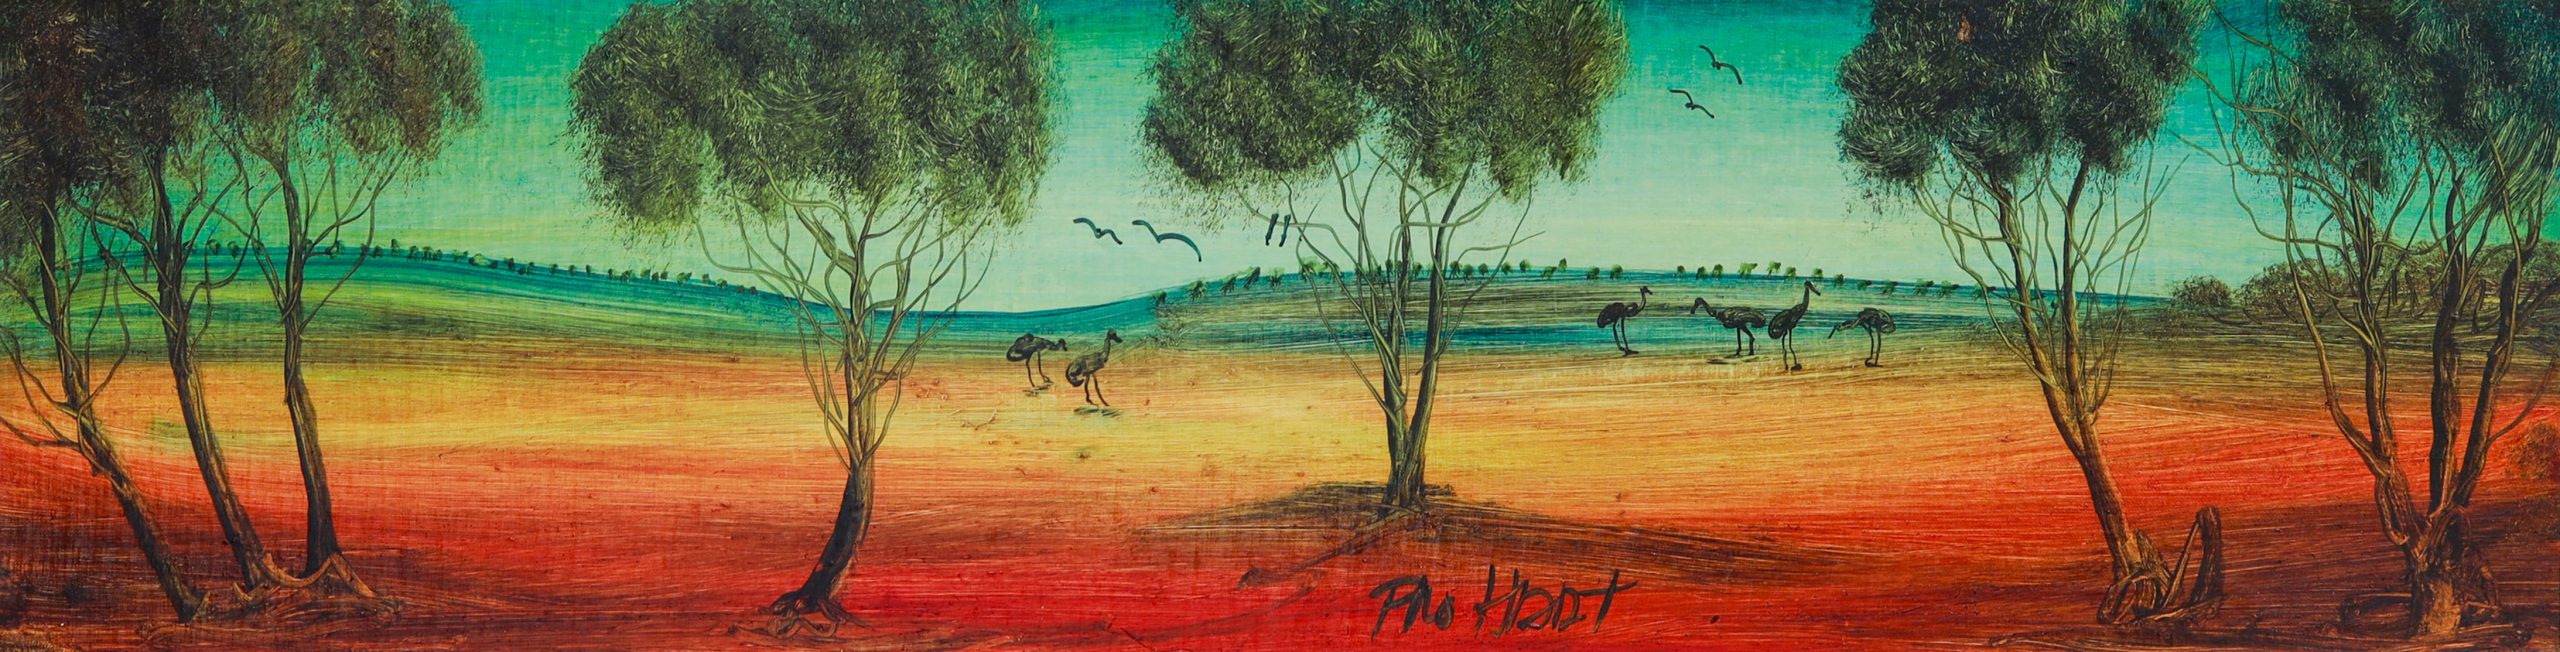 PMPH01 Emus in Landscape UF